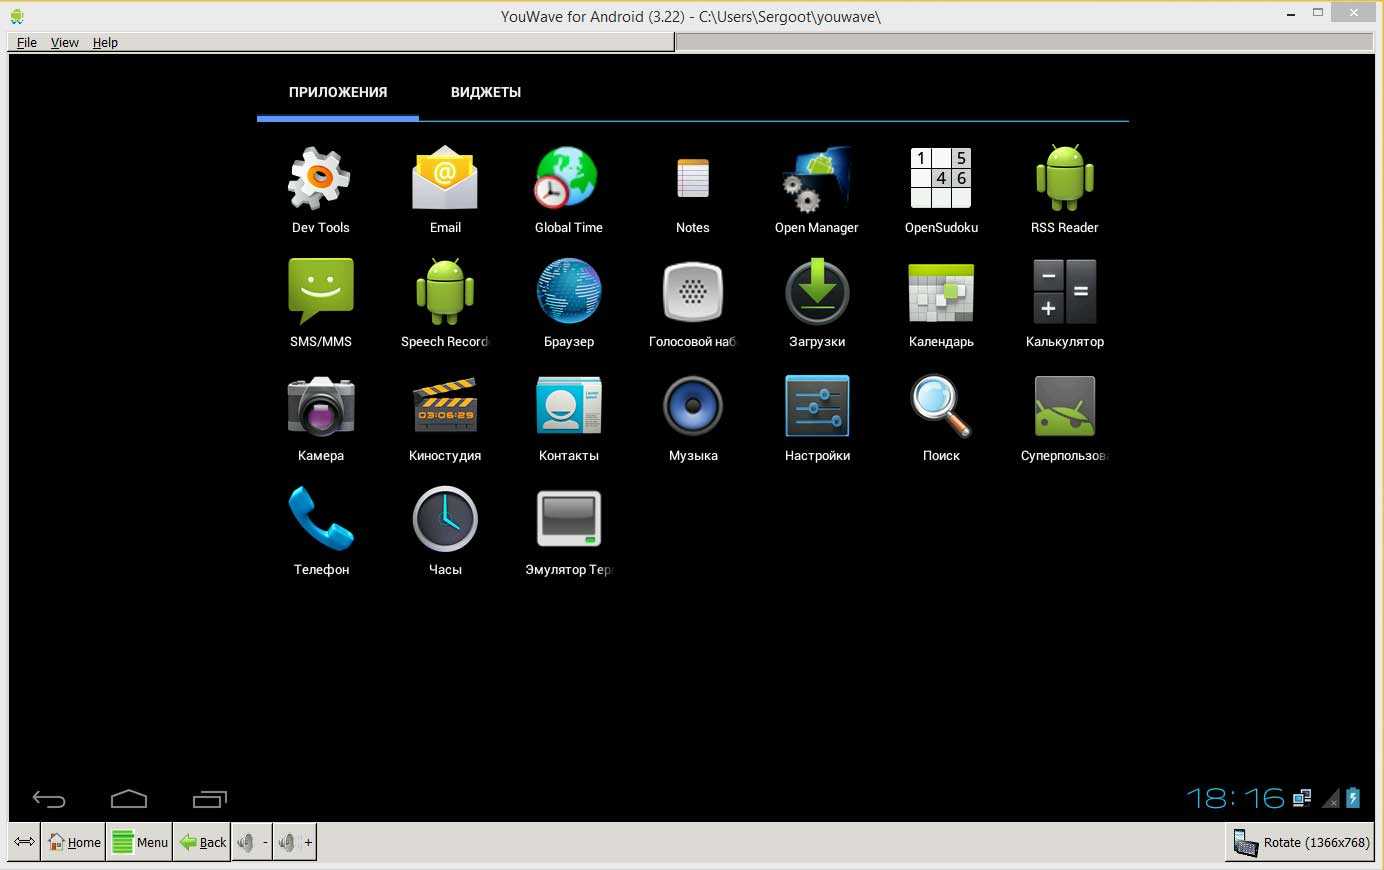 Инструкция по запуску android-приложений на windows 10 mobile появилась в сети - 4pda